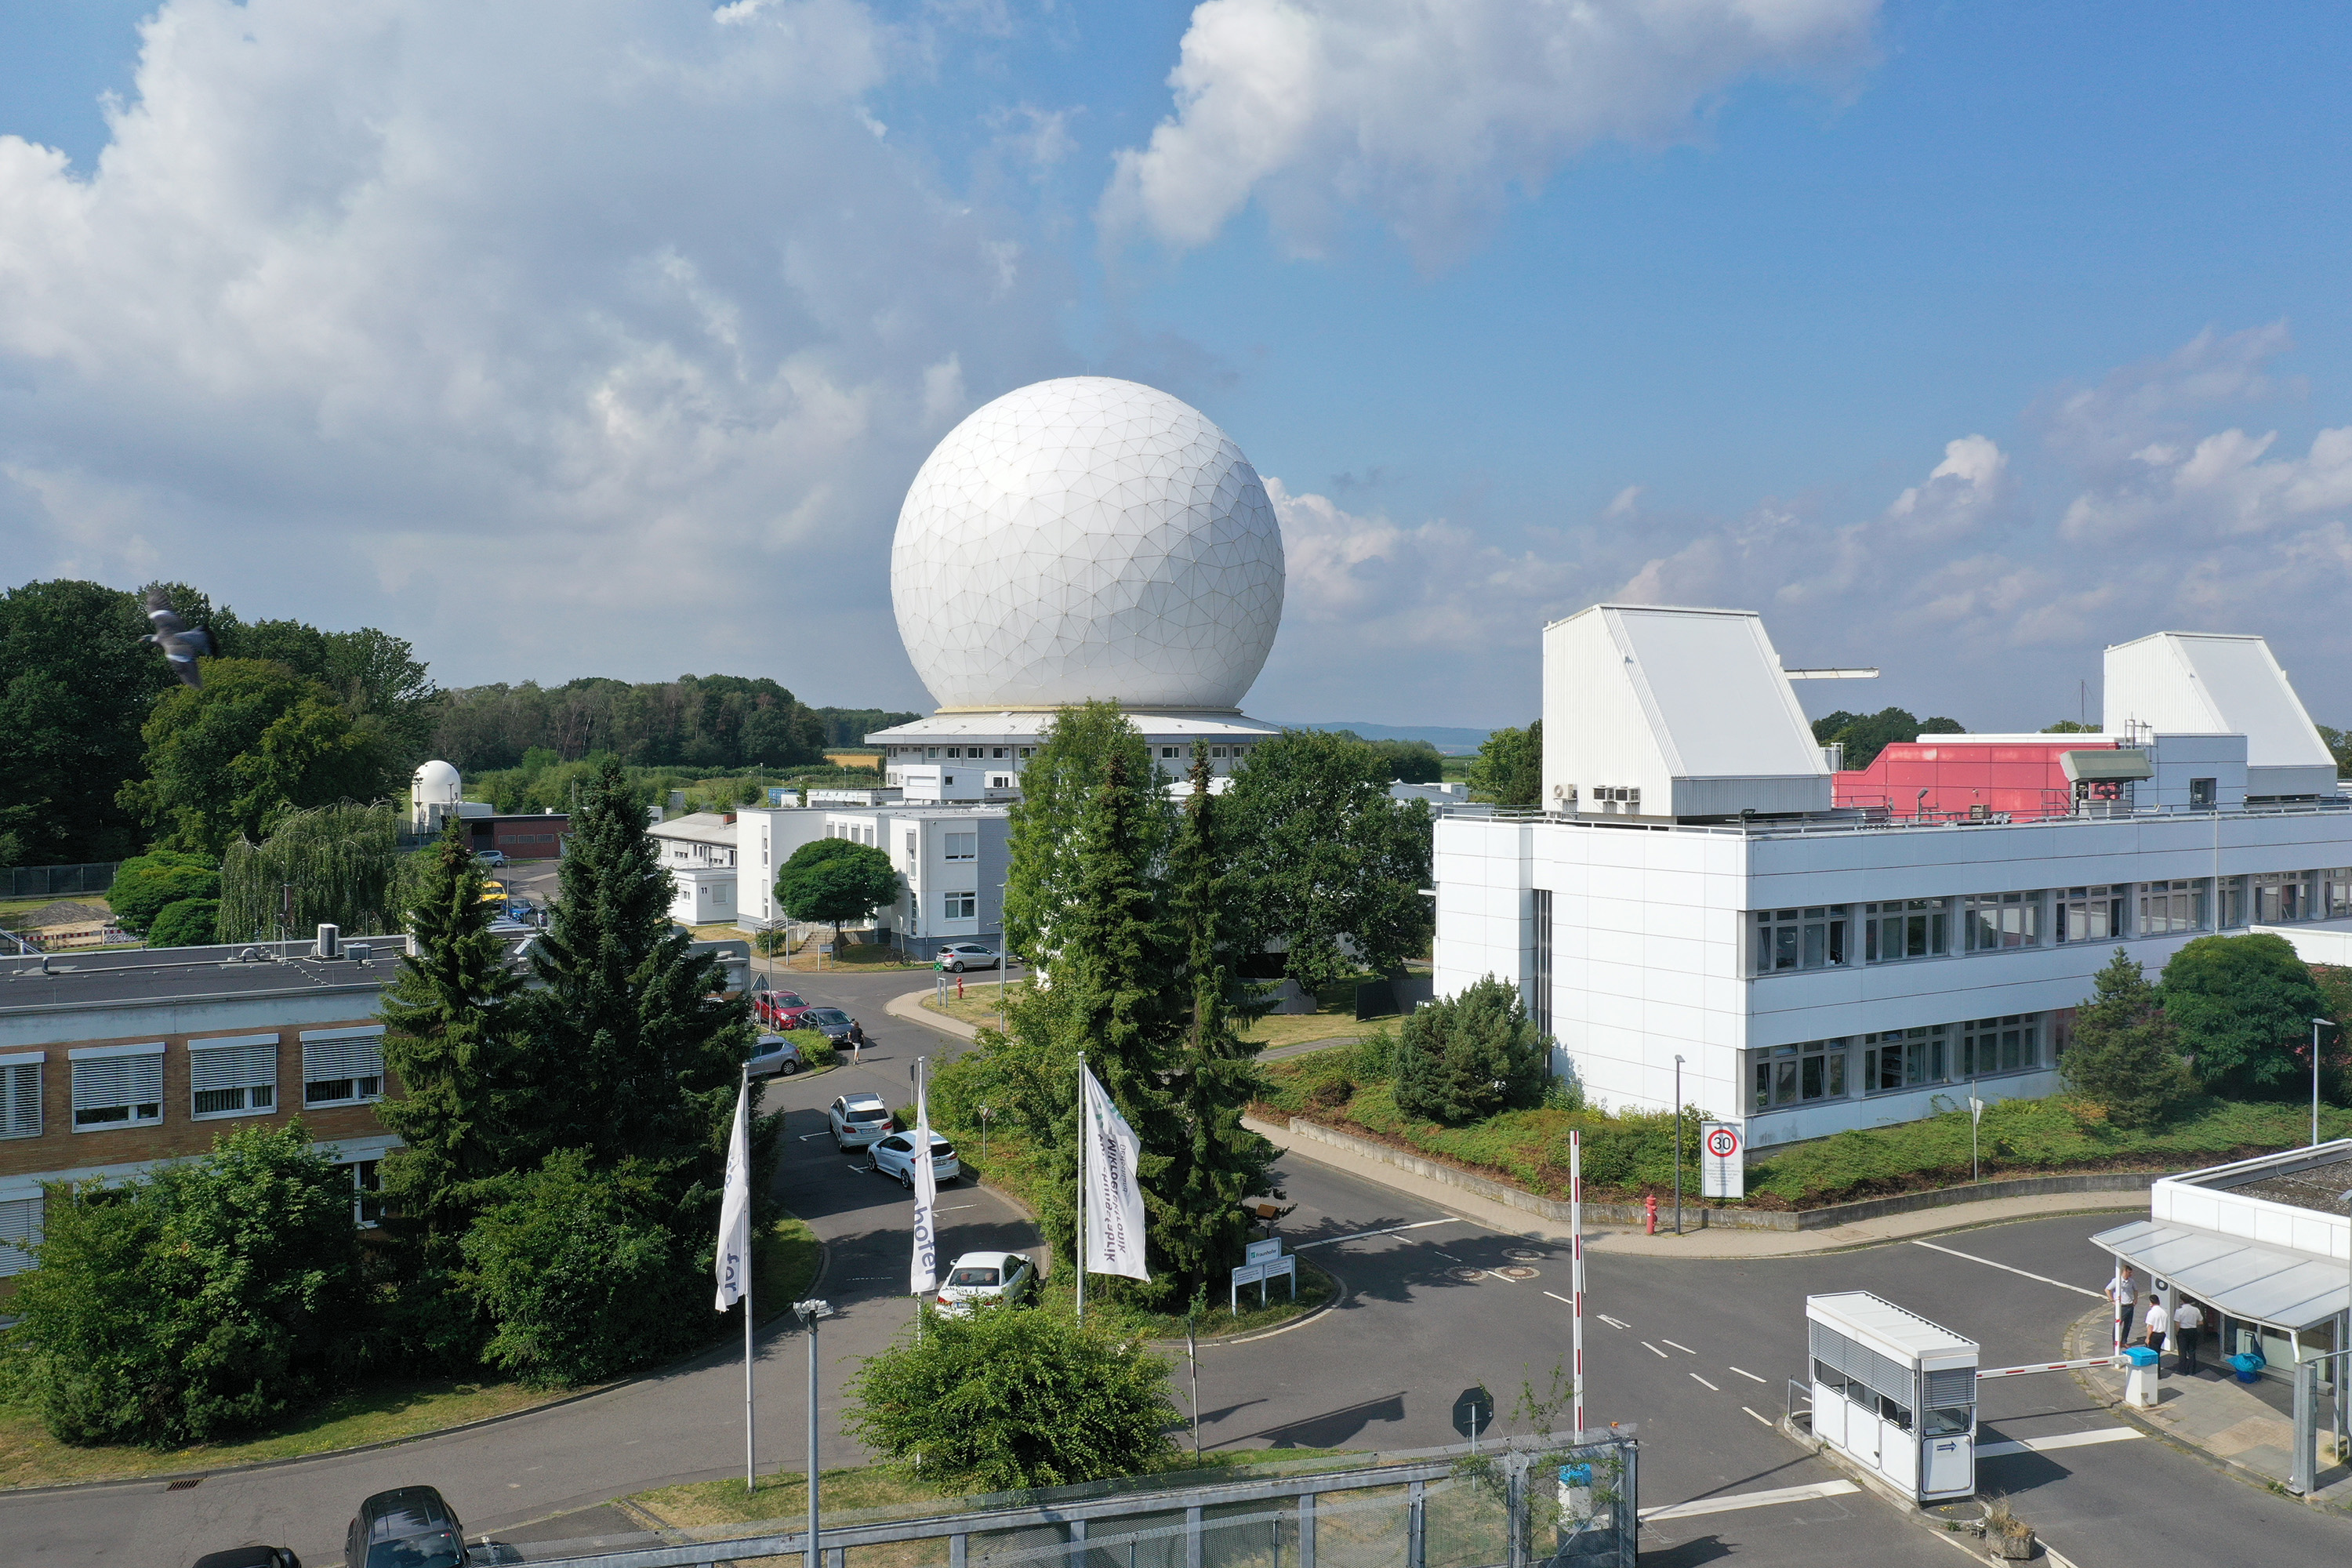 Nicht nur Weltraumbeobachtung: Radar bietet heute viele andere Anwendungsmöglichkeiten, die das Fraunhofer FHR in seiner neuen Online-Vortragsserie «Radar in Aktion» präsentieren wird.